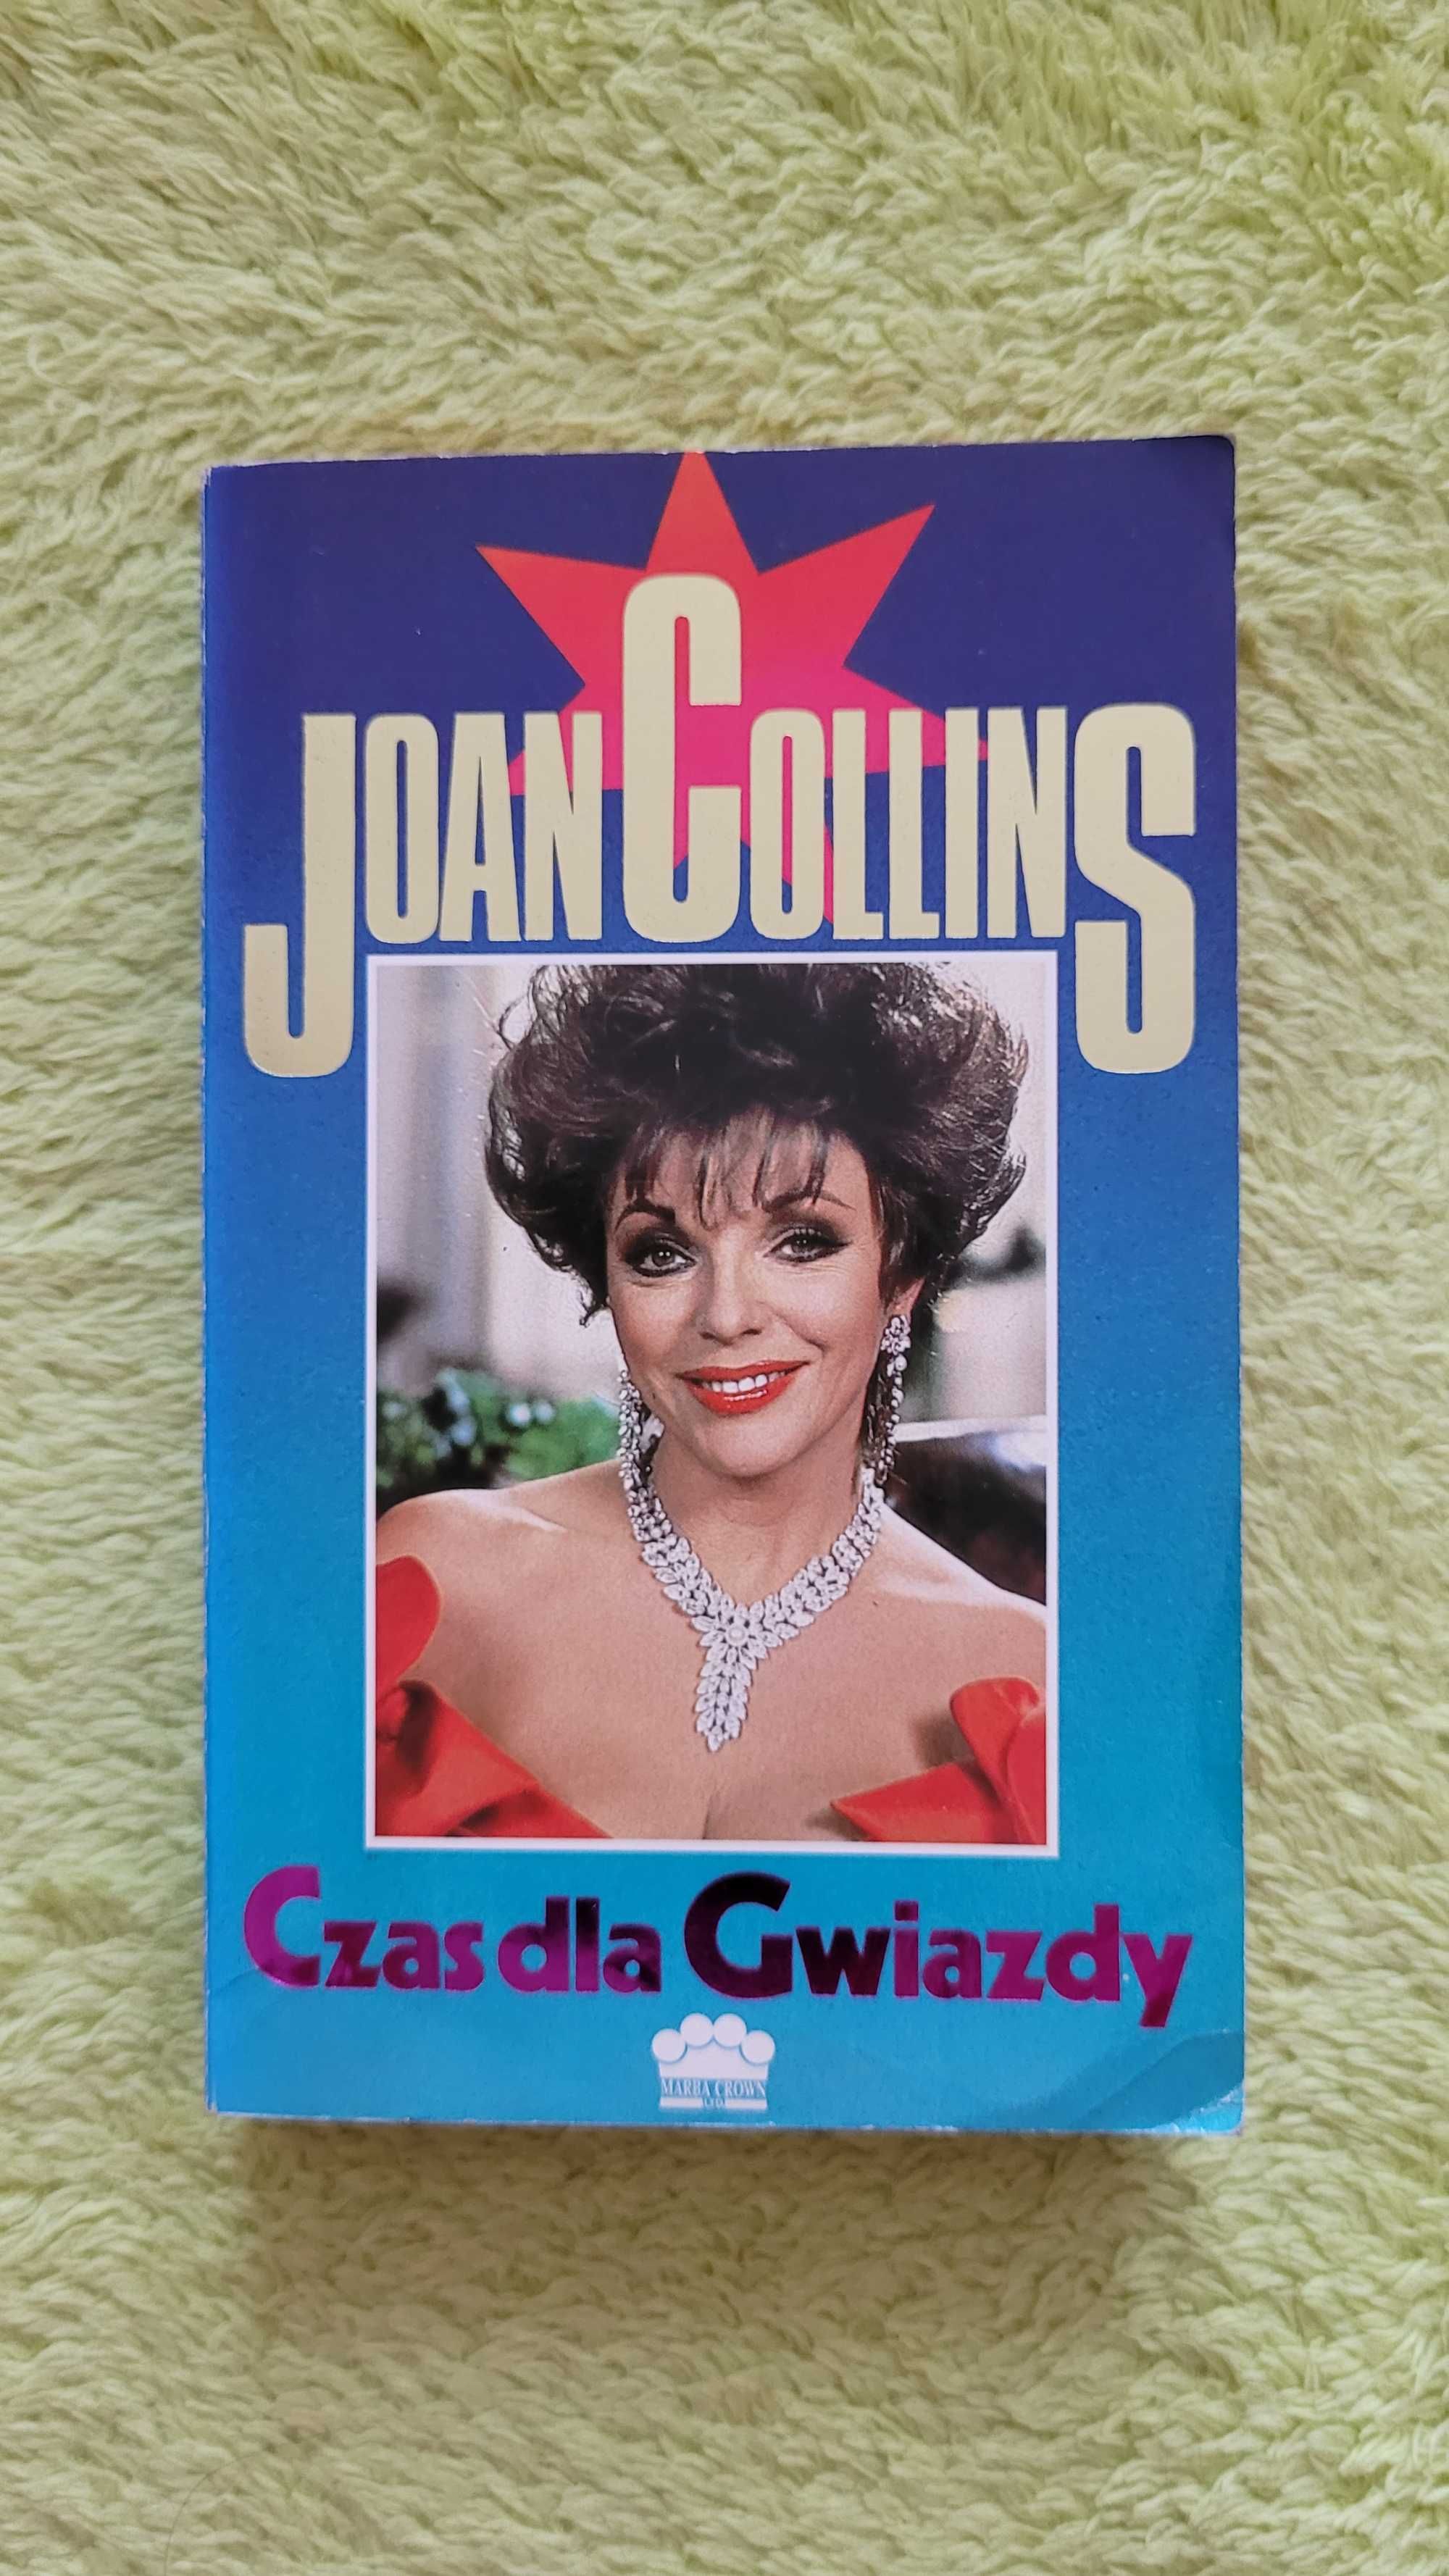 Książka: "Czas dla gwiazdy", Joan Collins